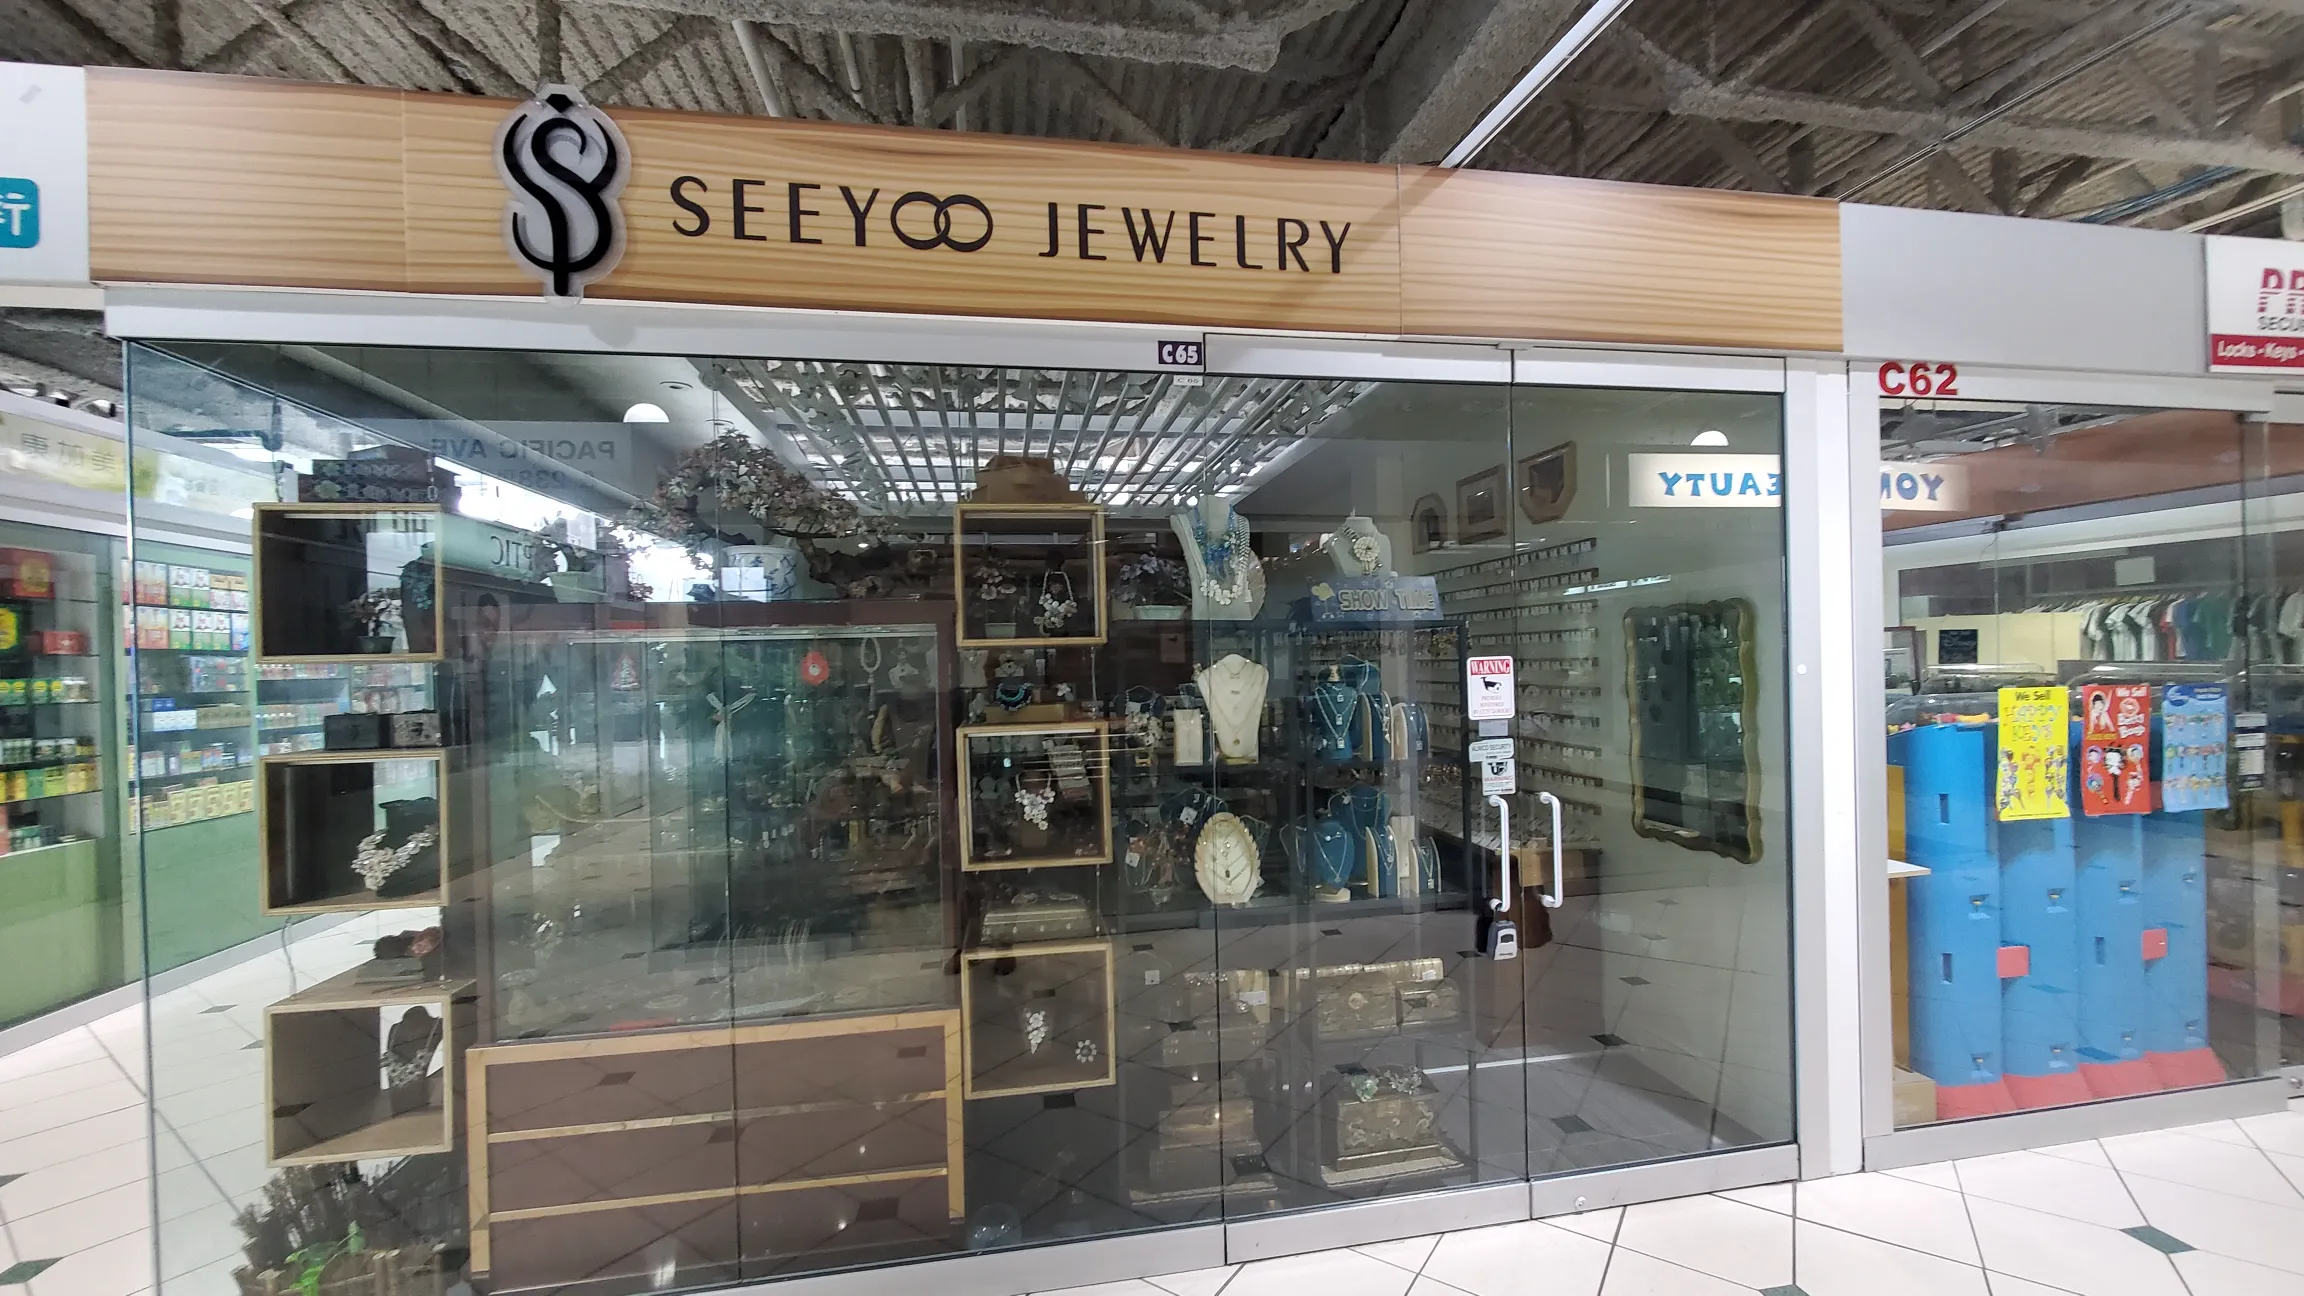 Seeyoo Jewelry